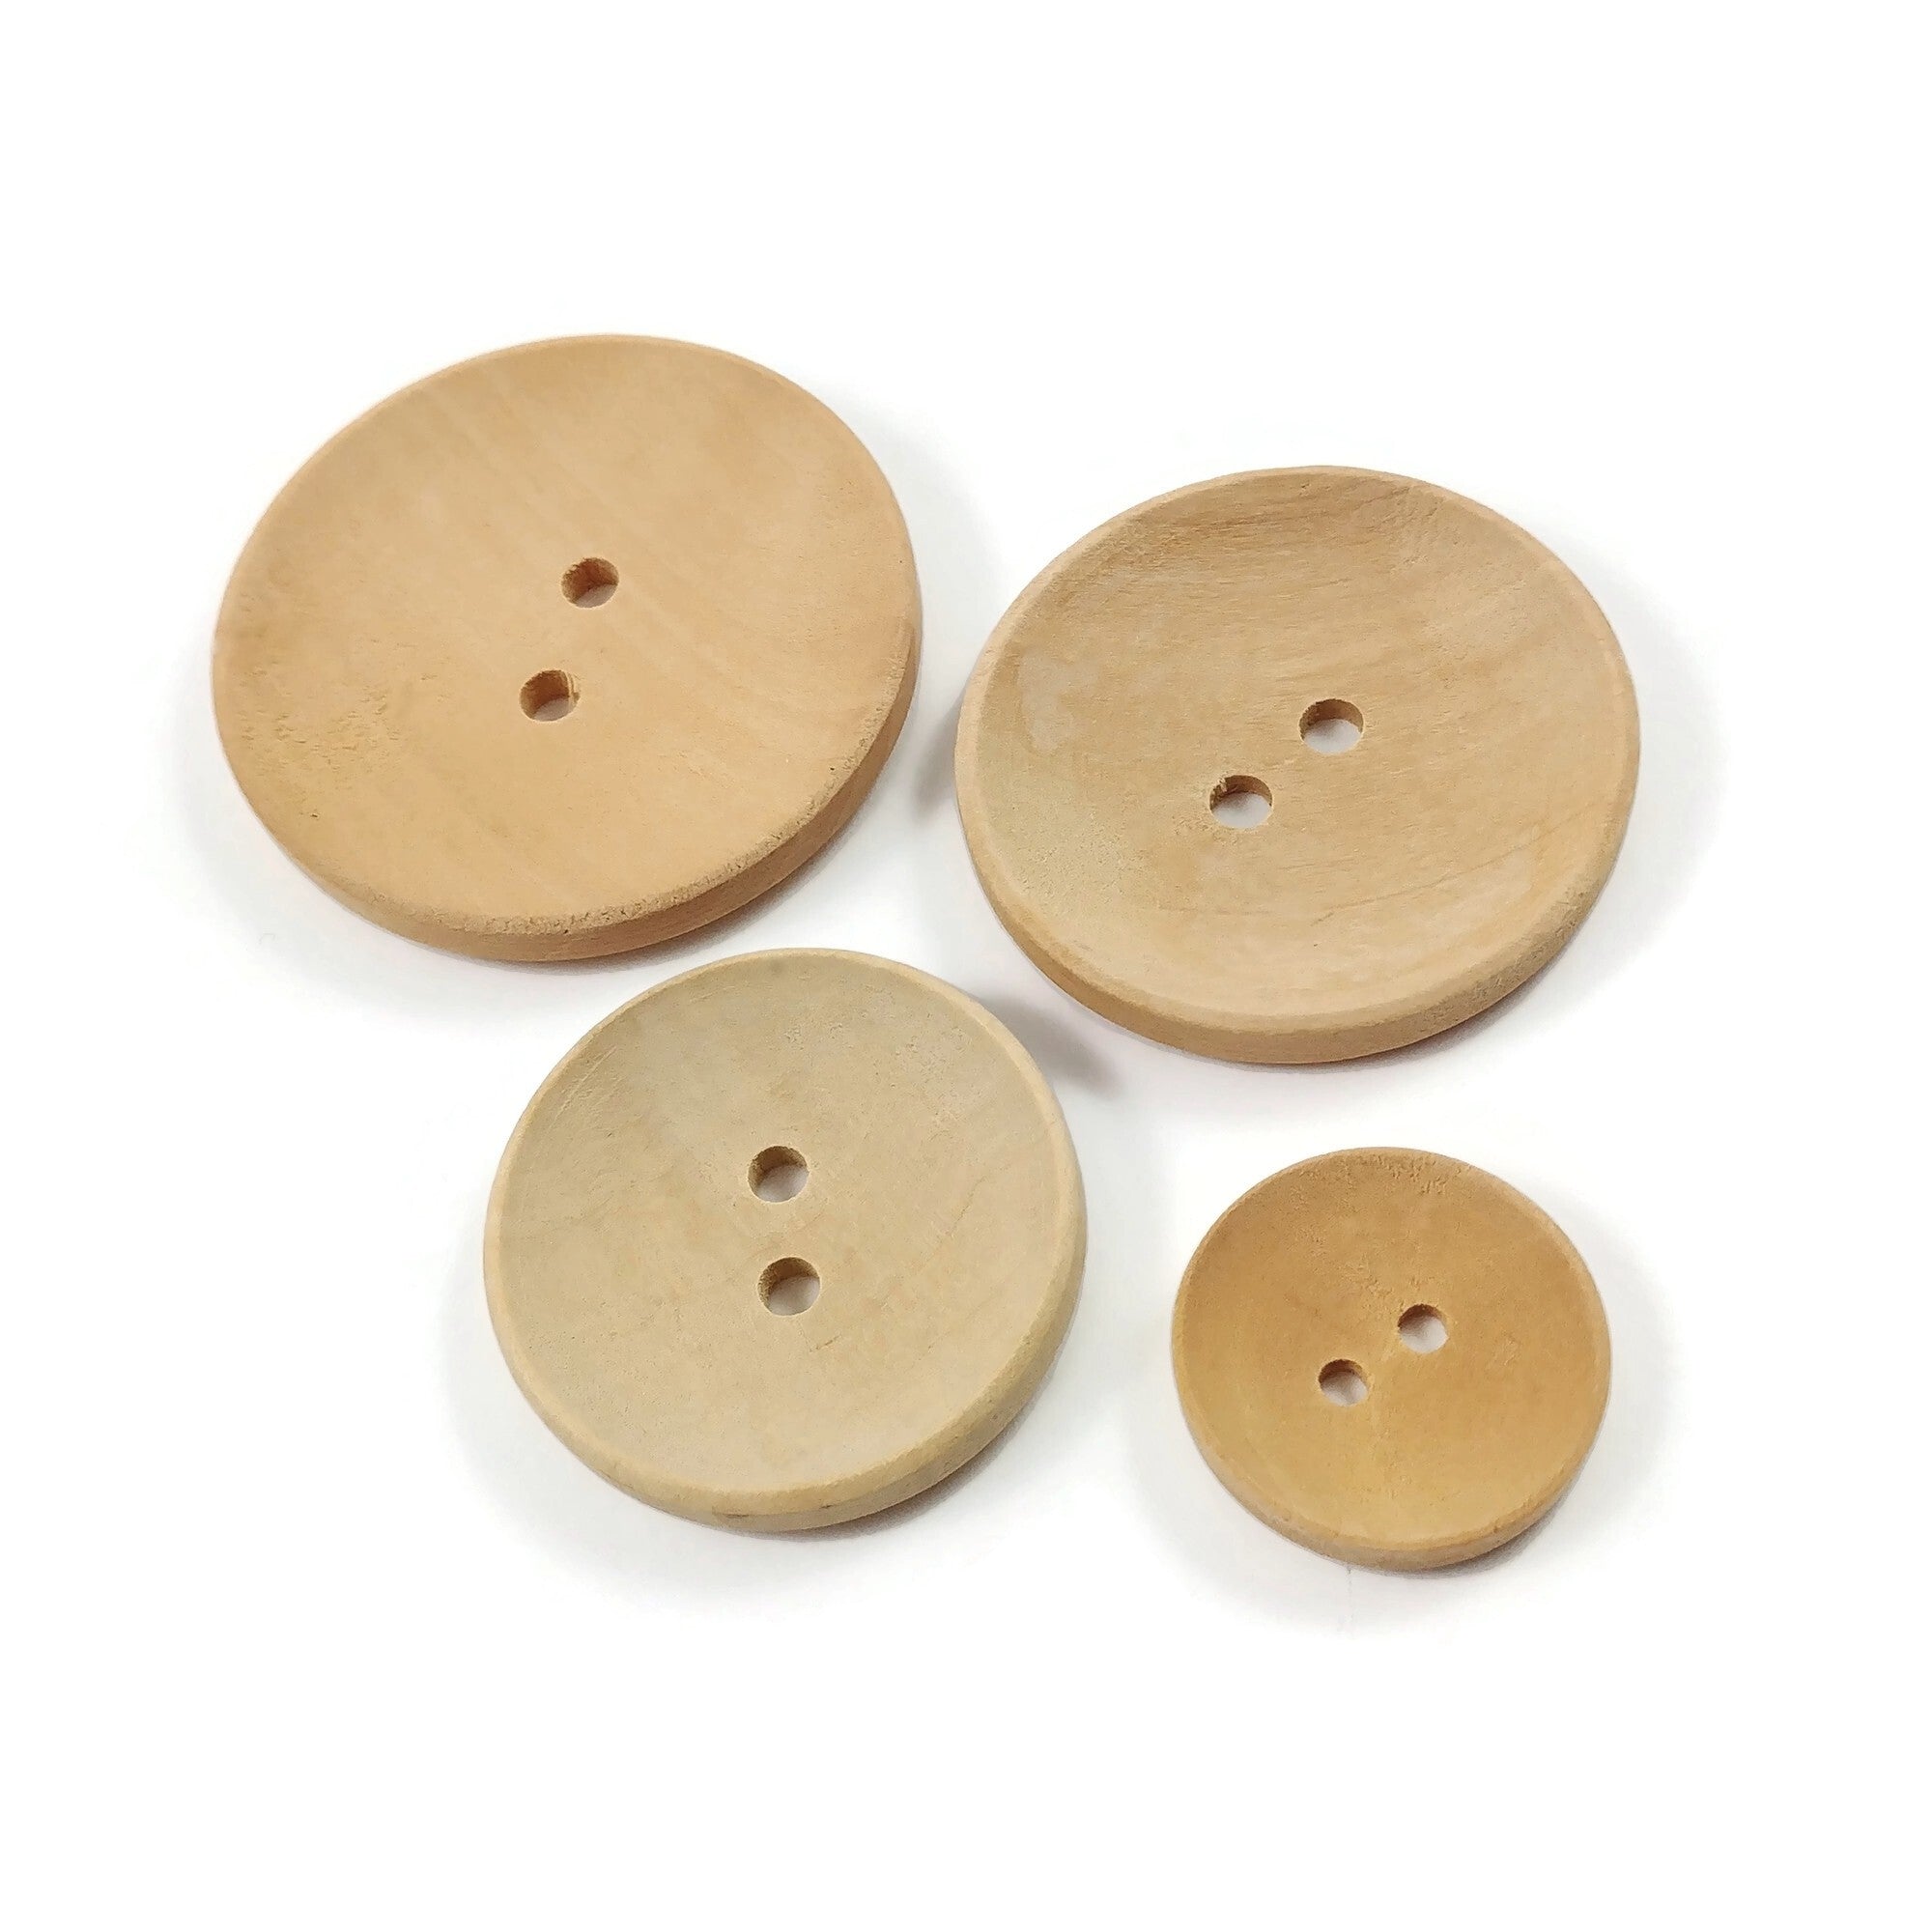 Bouton de bois brut de 20, 30, 35 ou 40mm - ensemble de 2 boutons en bois naturel